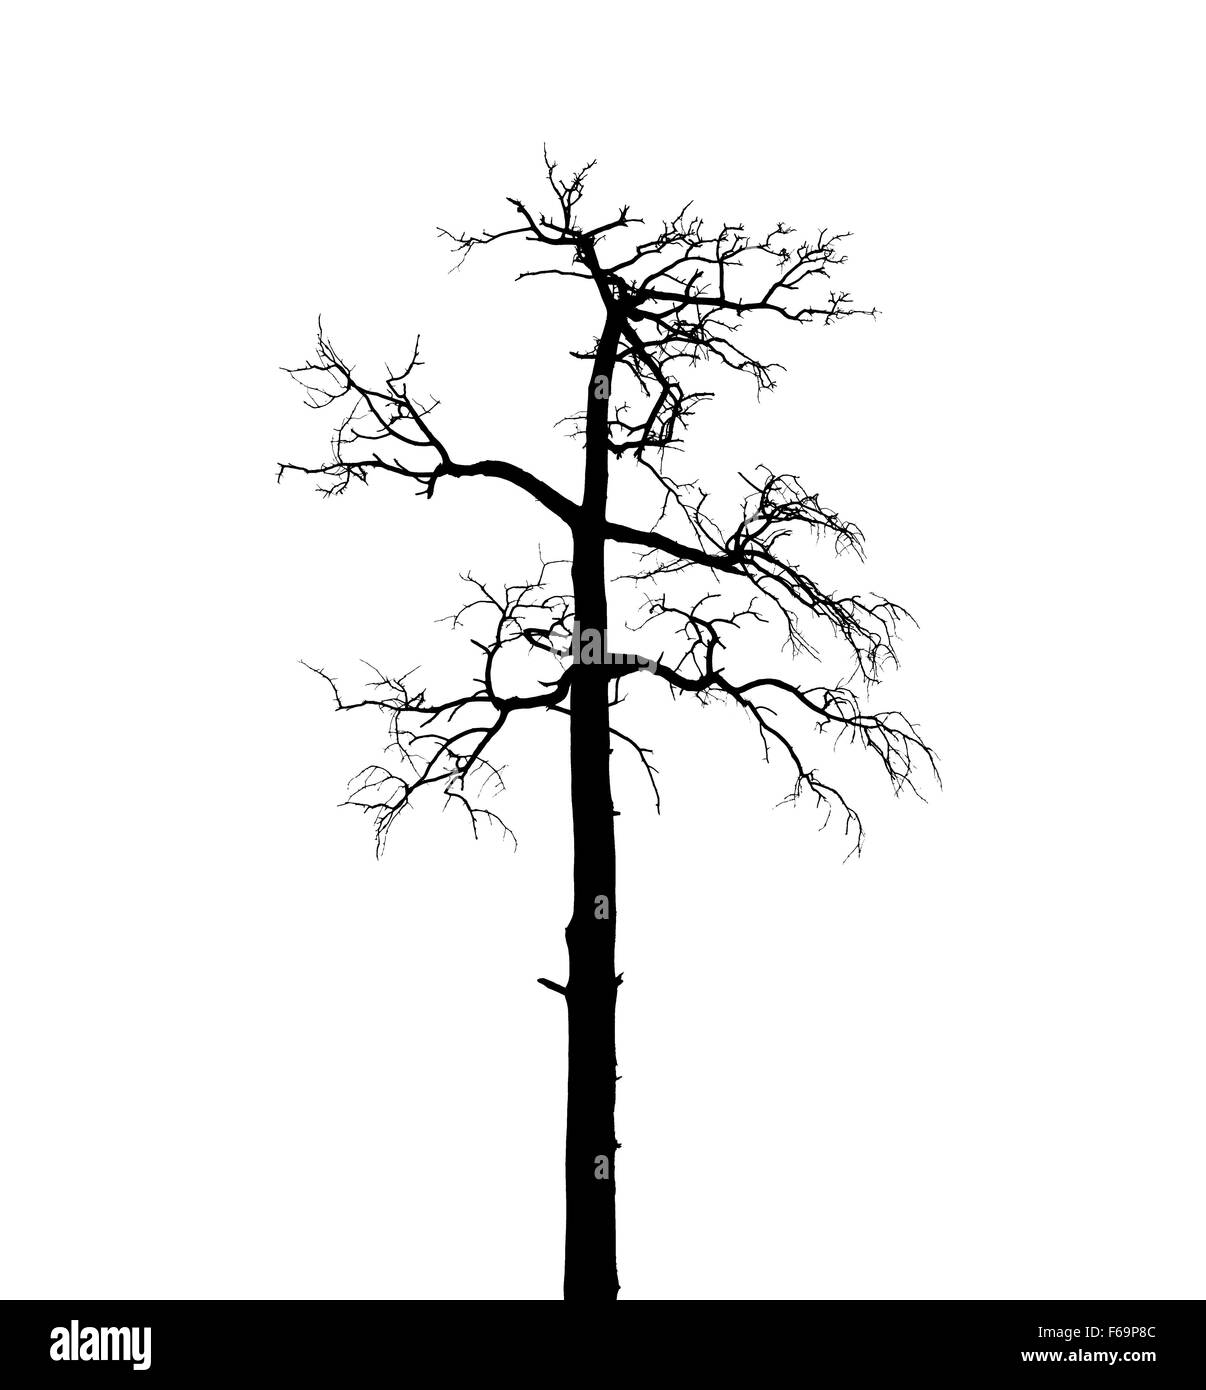 Morto a secco Unione pino isolato su sfondo bianco Foto Stock